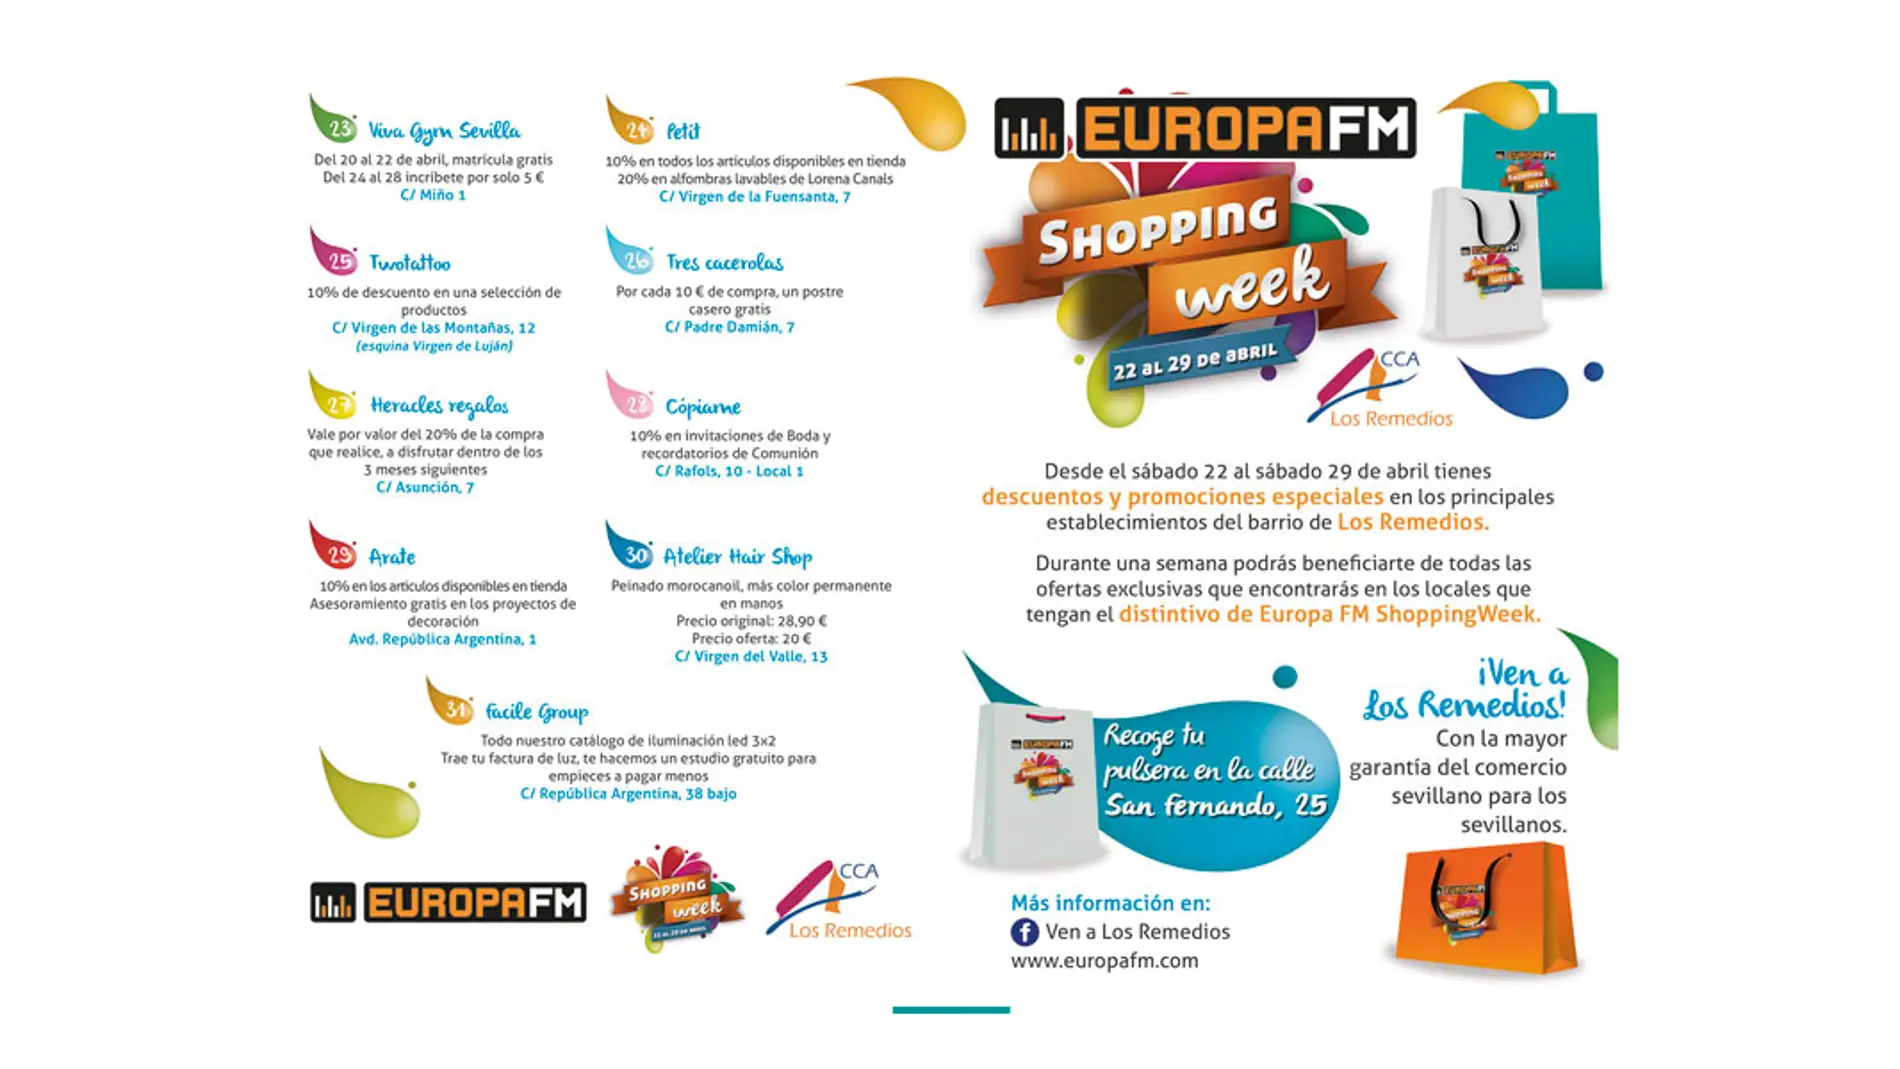 Europa FM Shopping Week en Sevilla